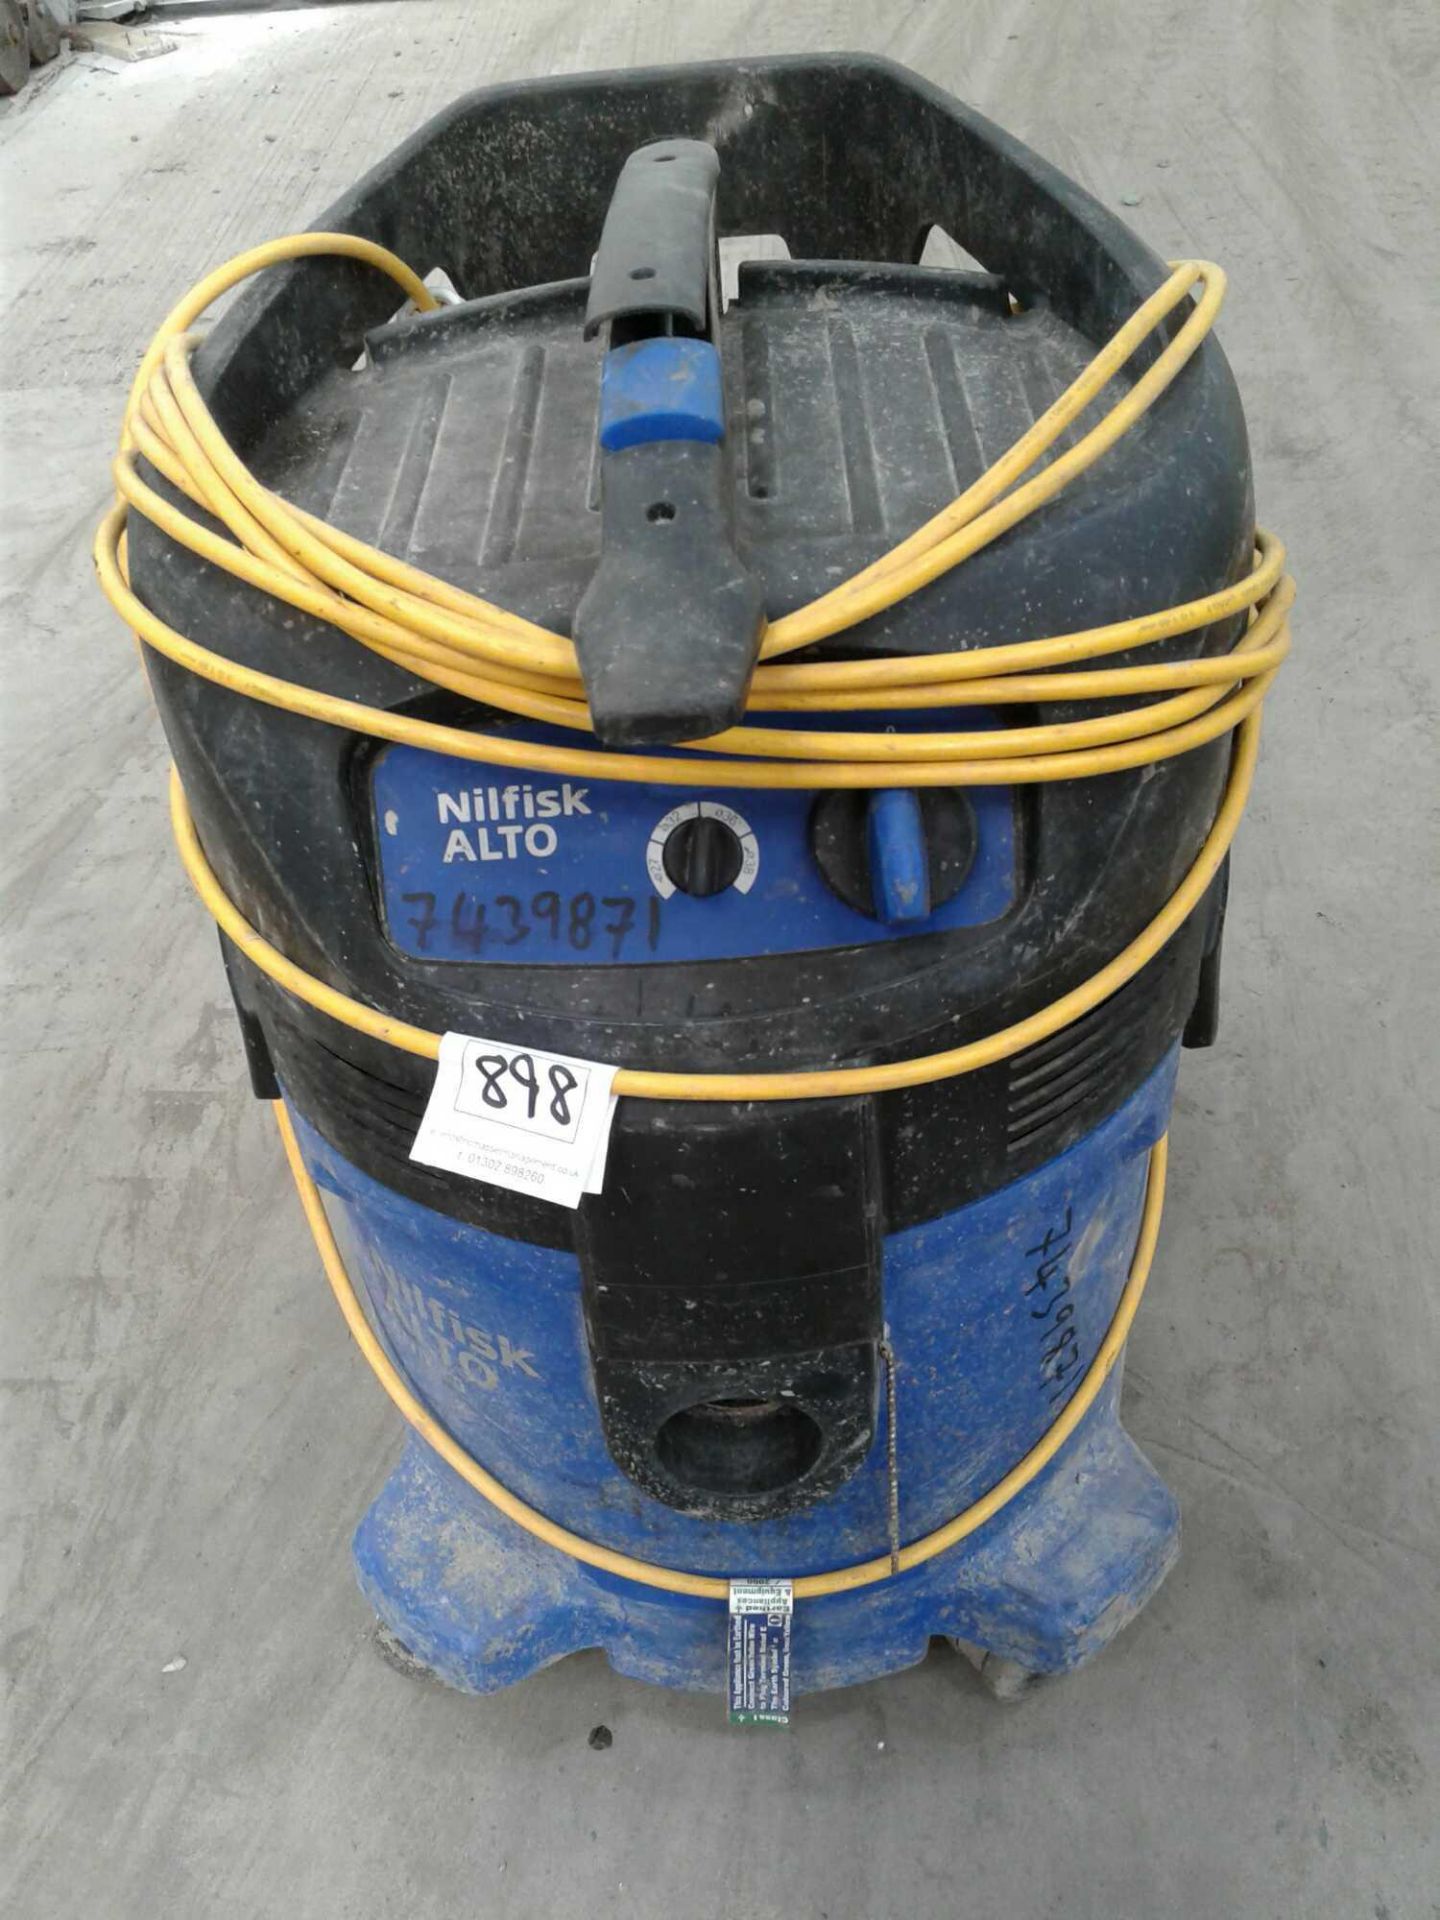 Nilfisk alto vacuum cleaner 110 V